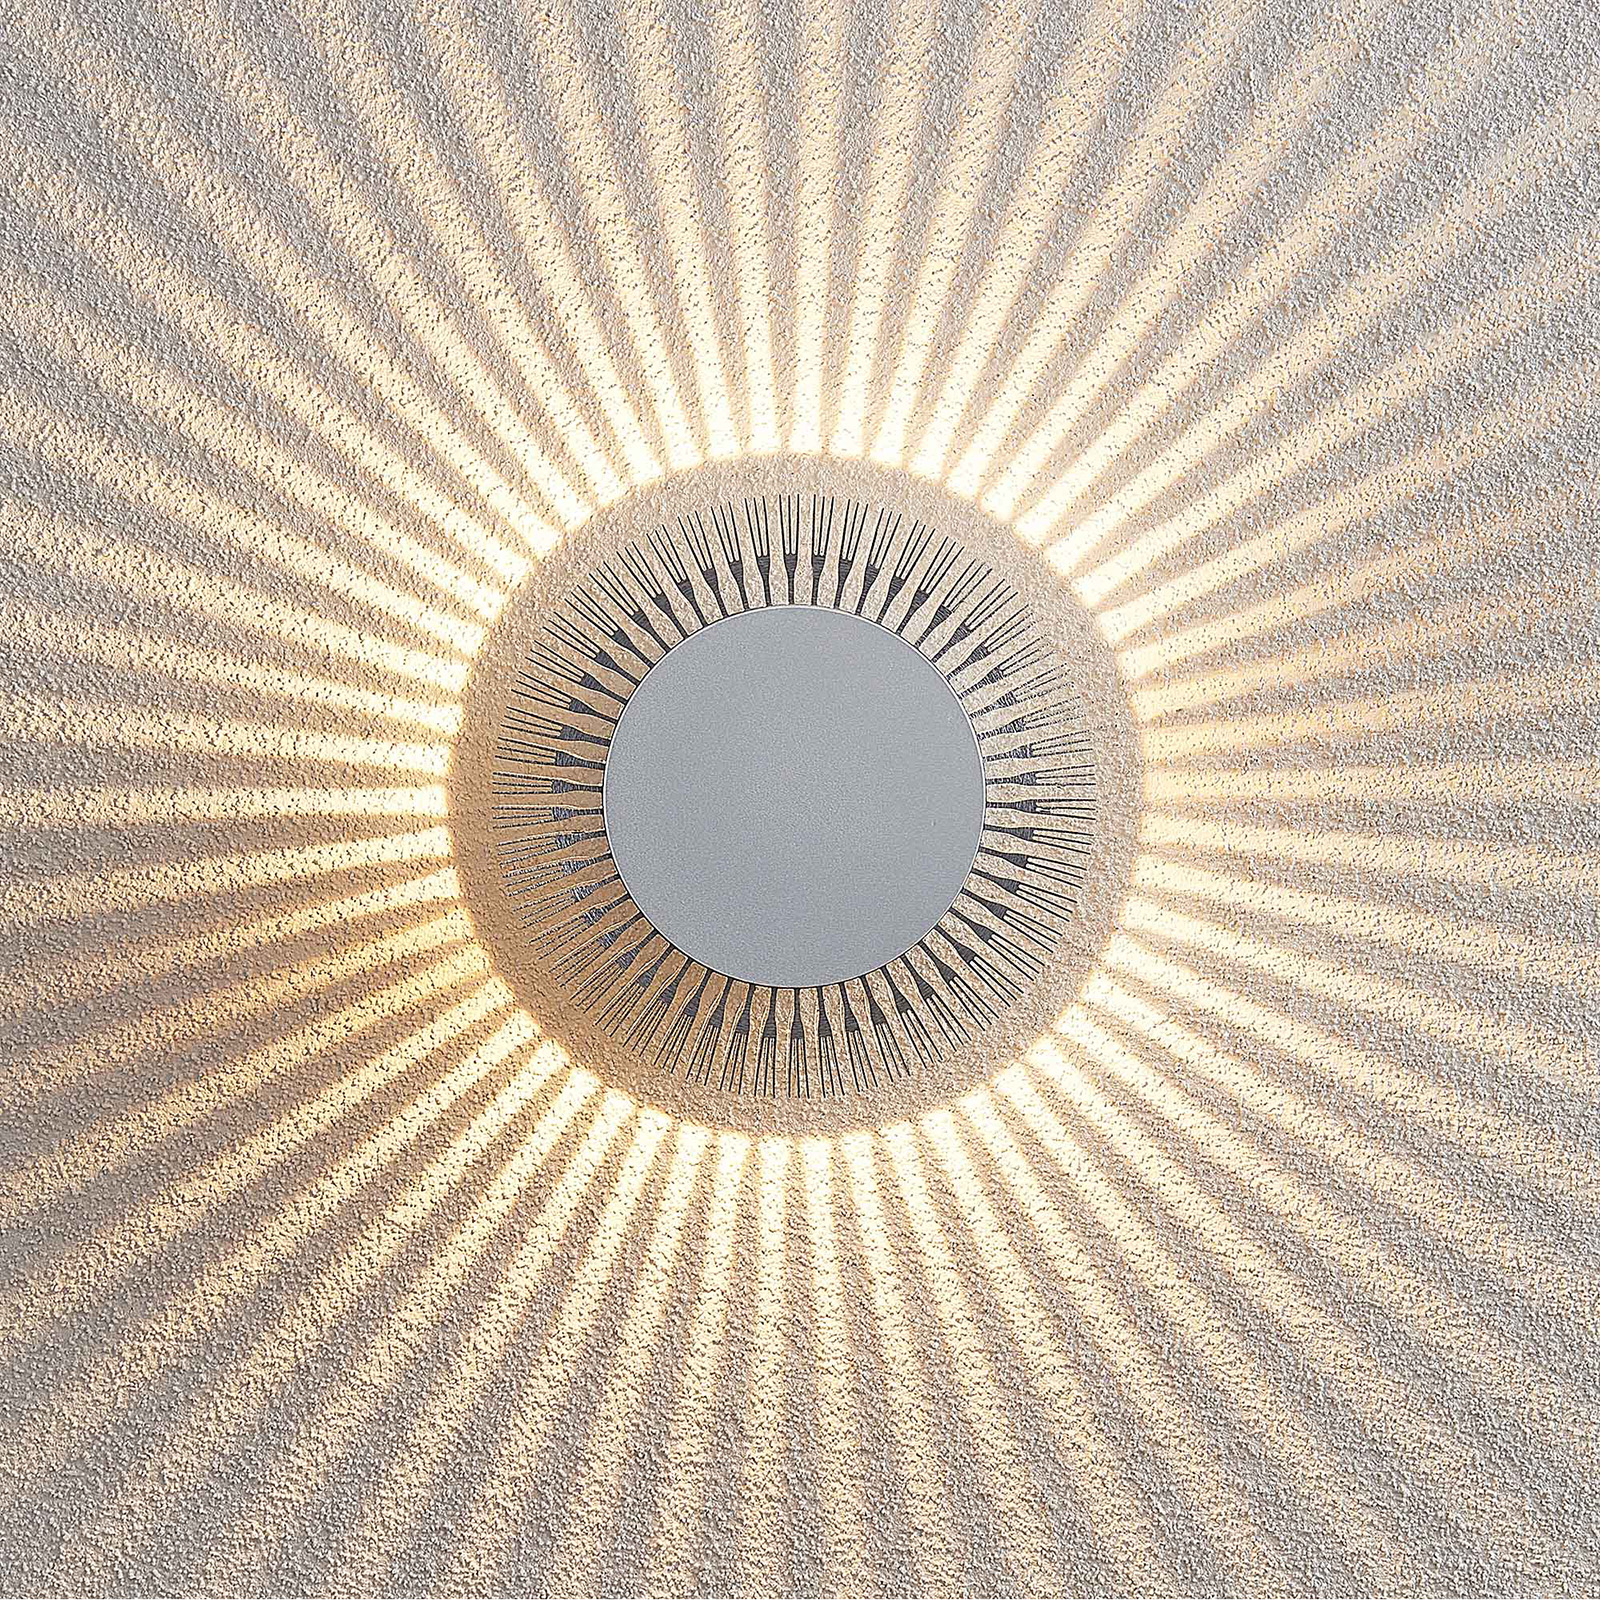 Lucande Keany LED nástěnné světlo, kruhové